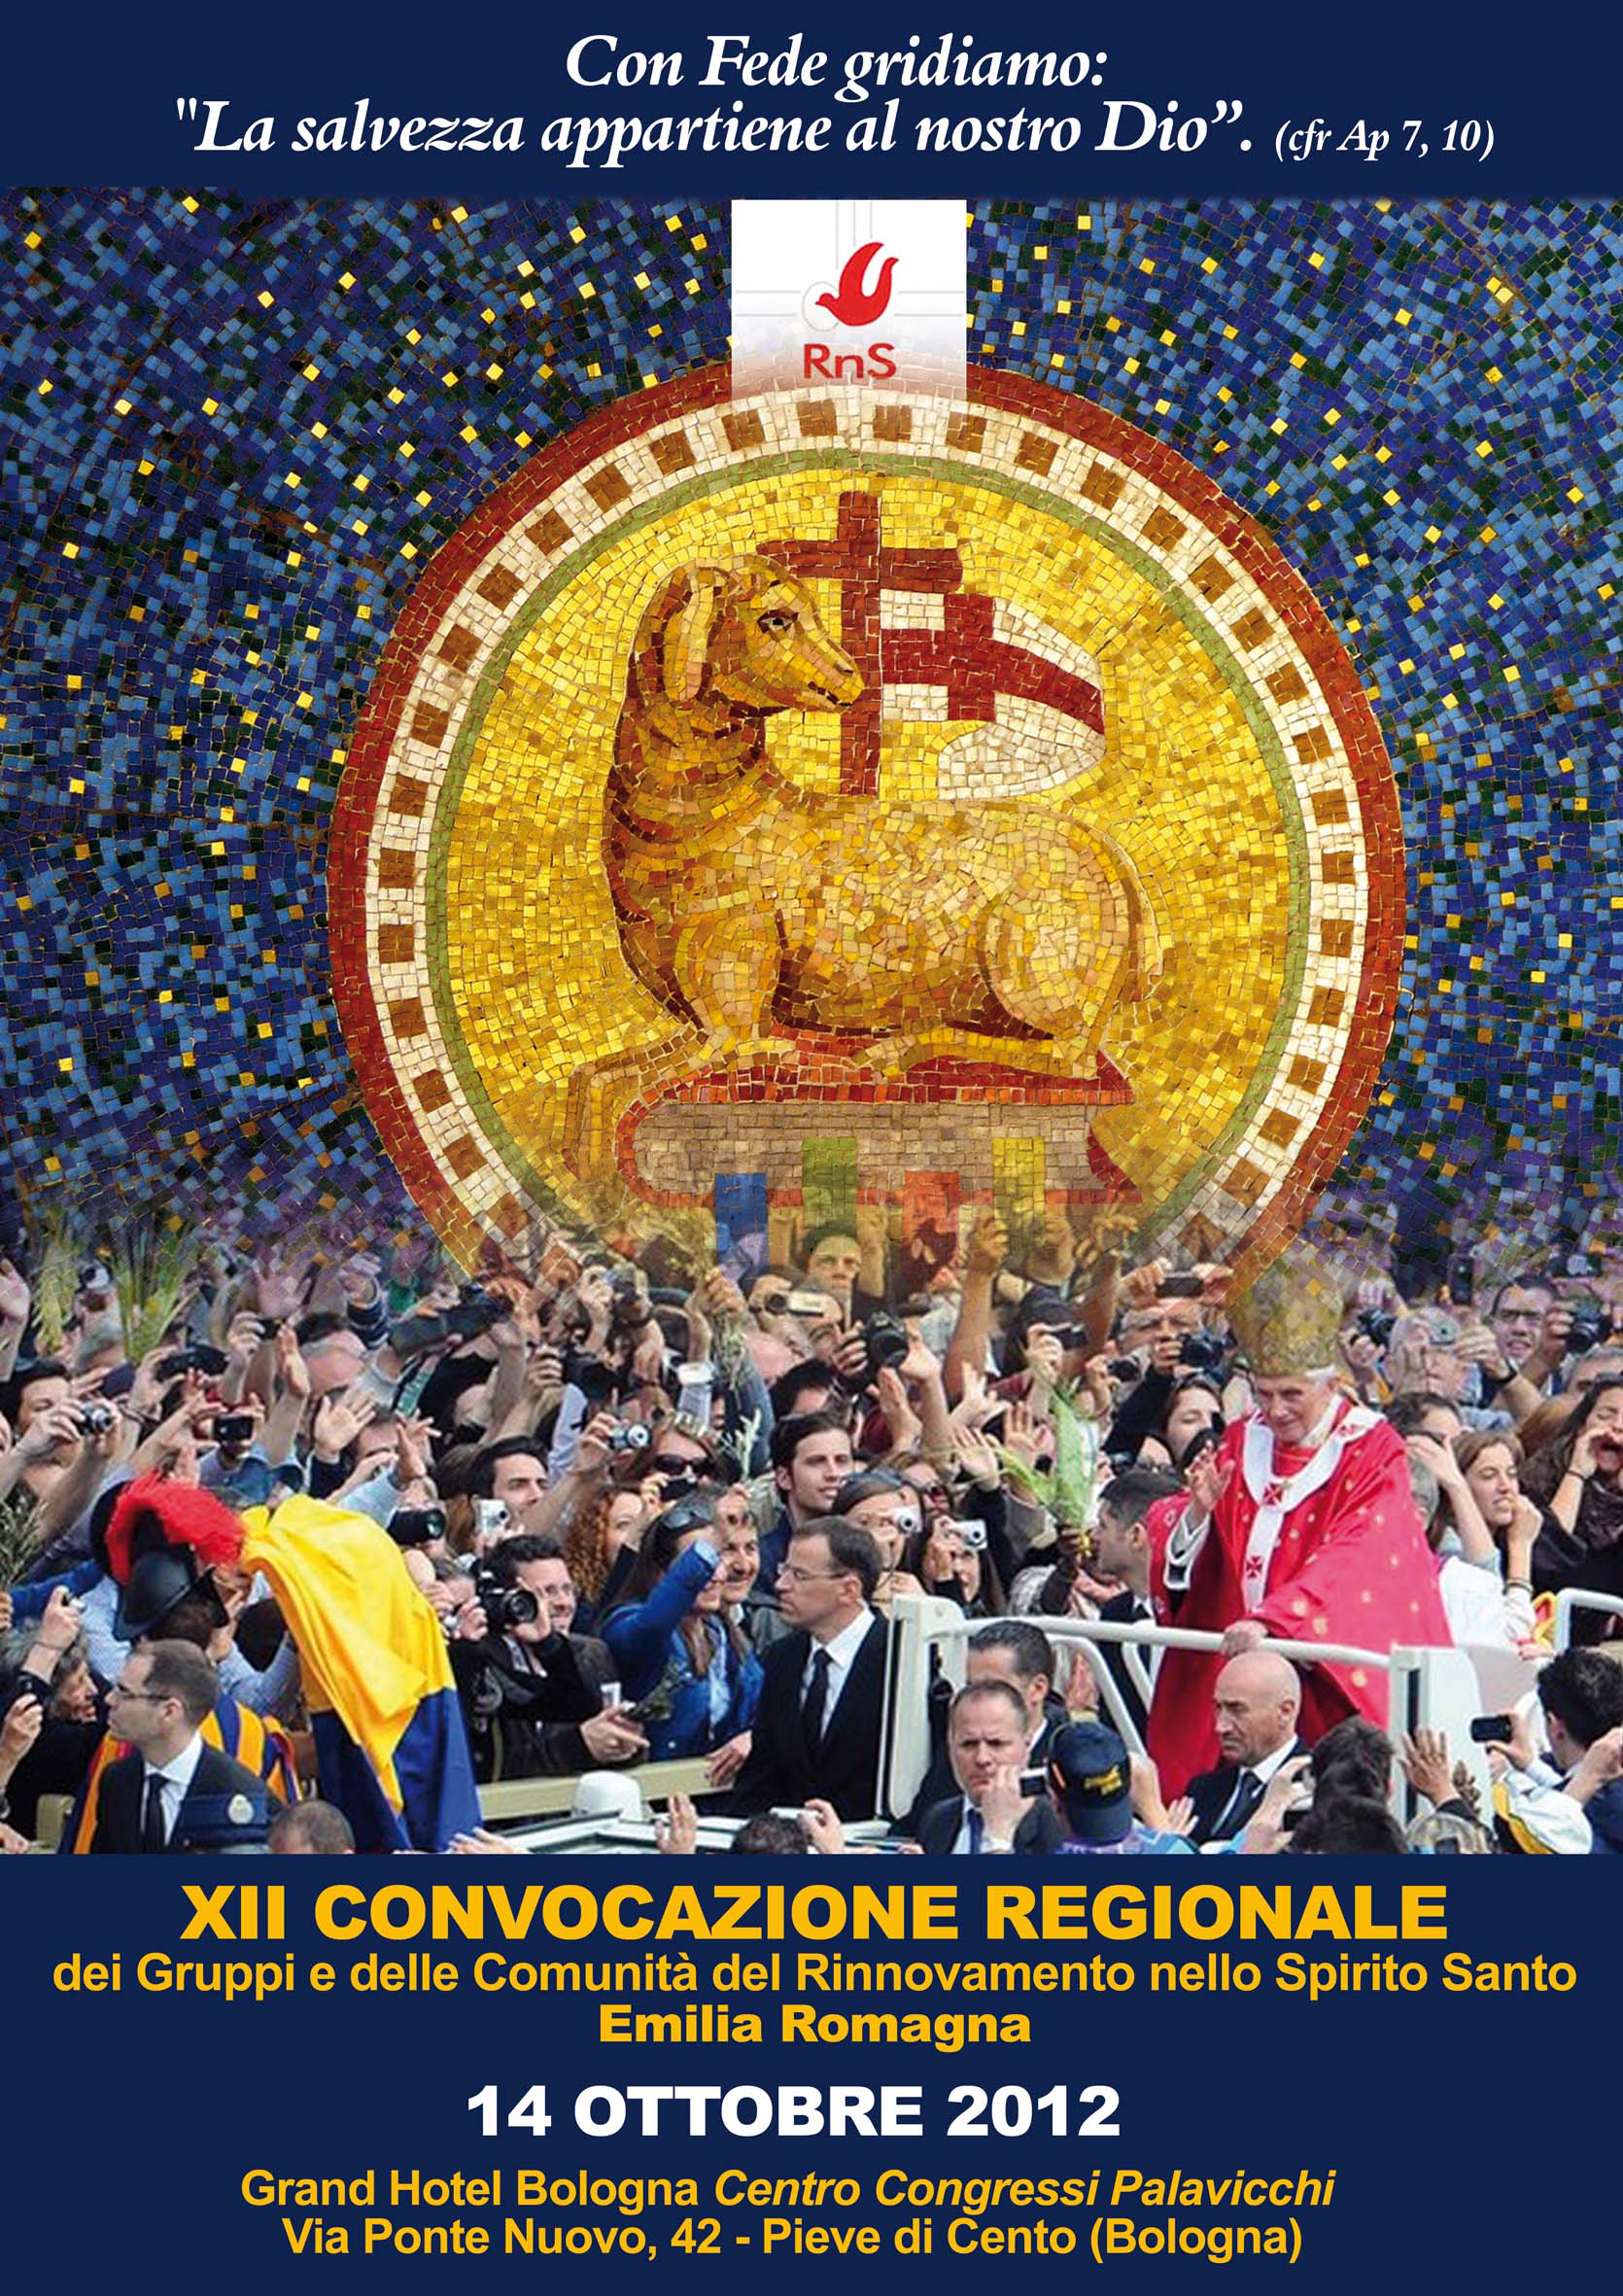 Convocazione Regionale RnS in Emilia-Romagna